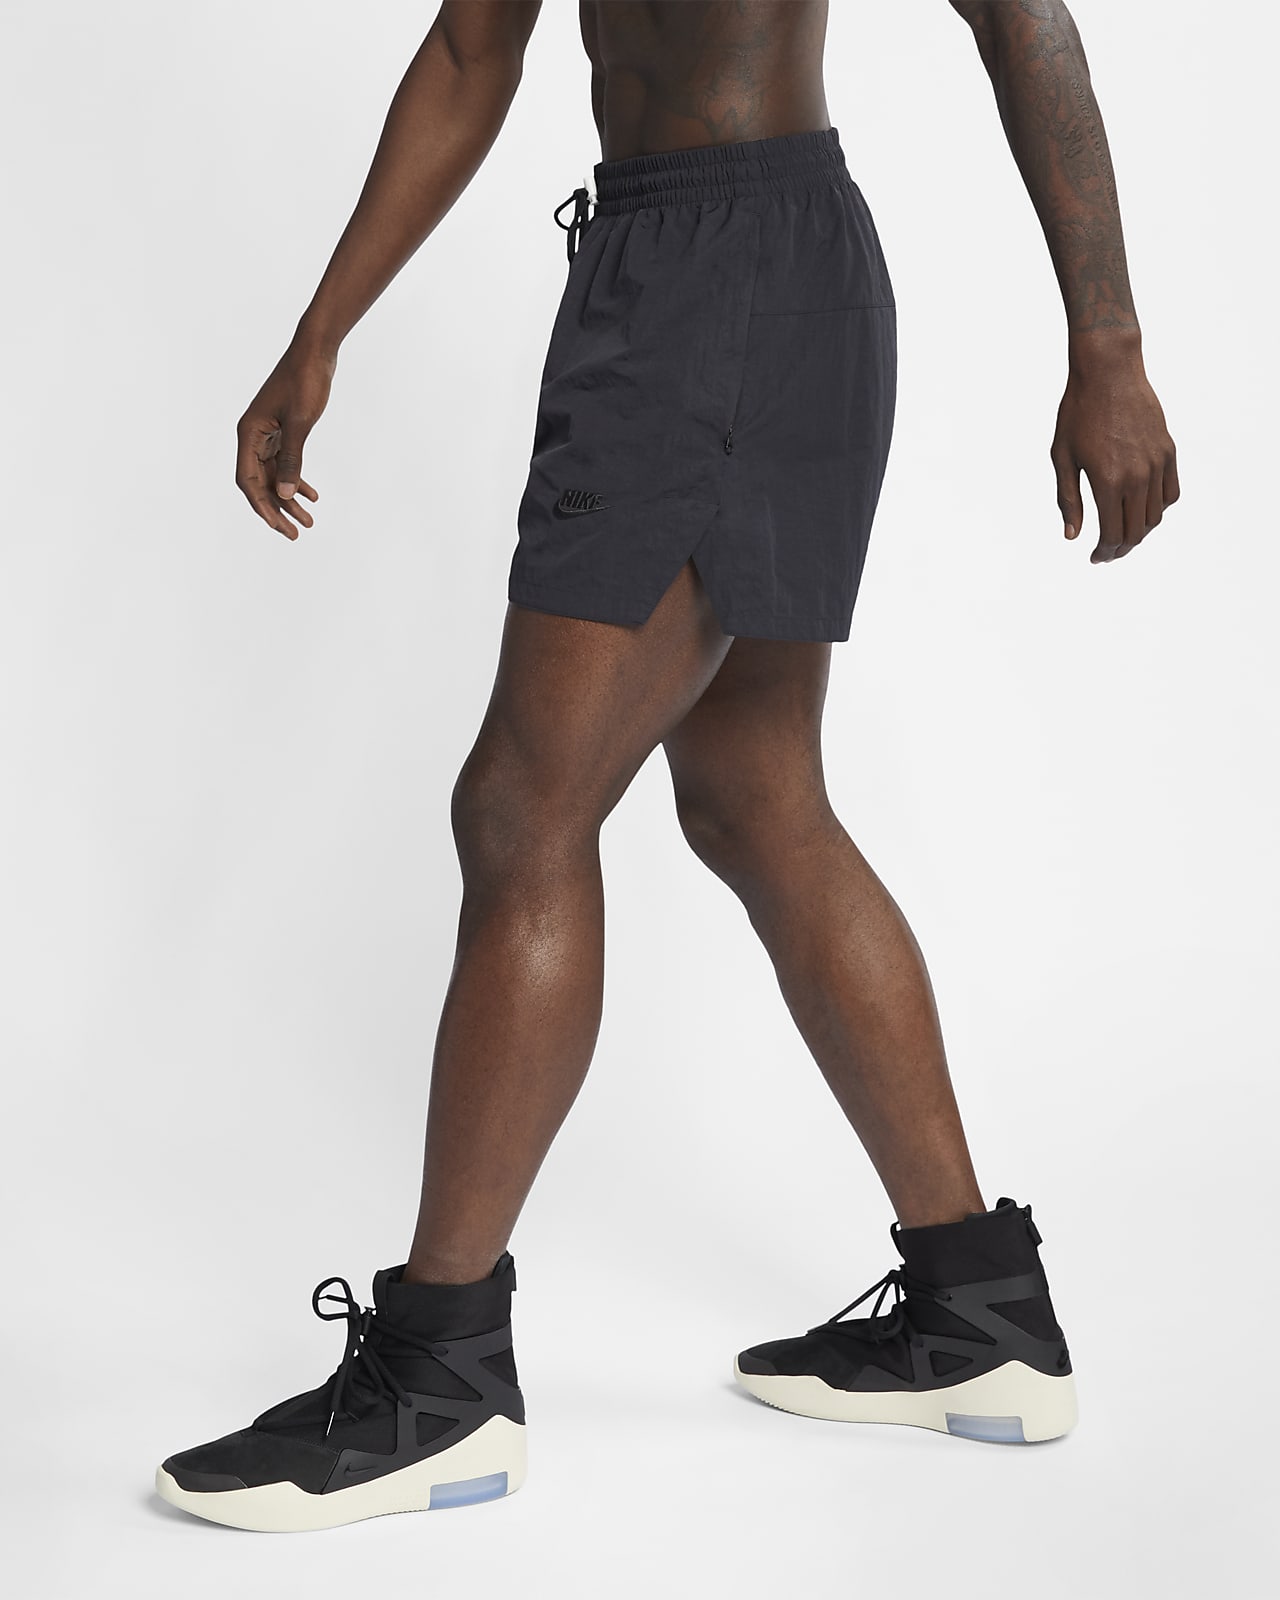 LC Fear of God x Nike NBA shorts : r/FearofGod